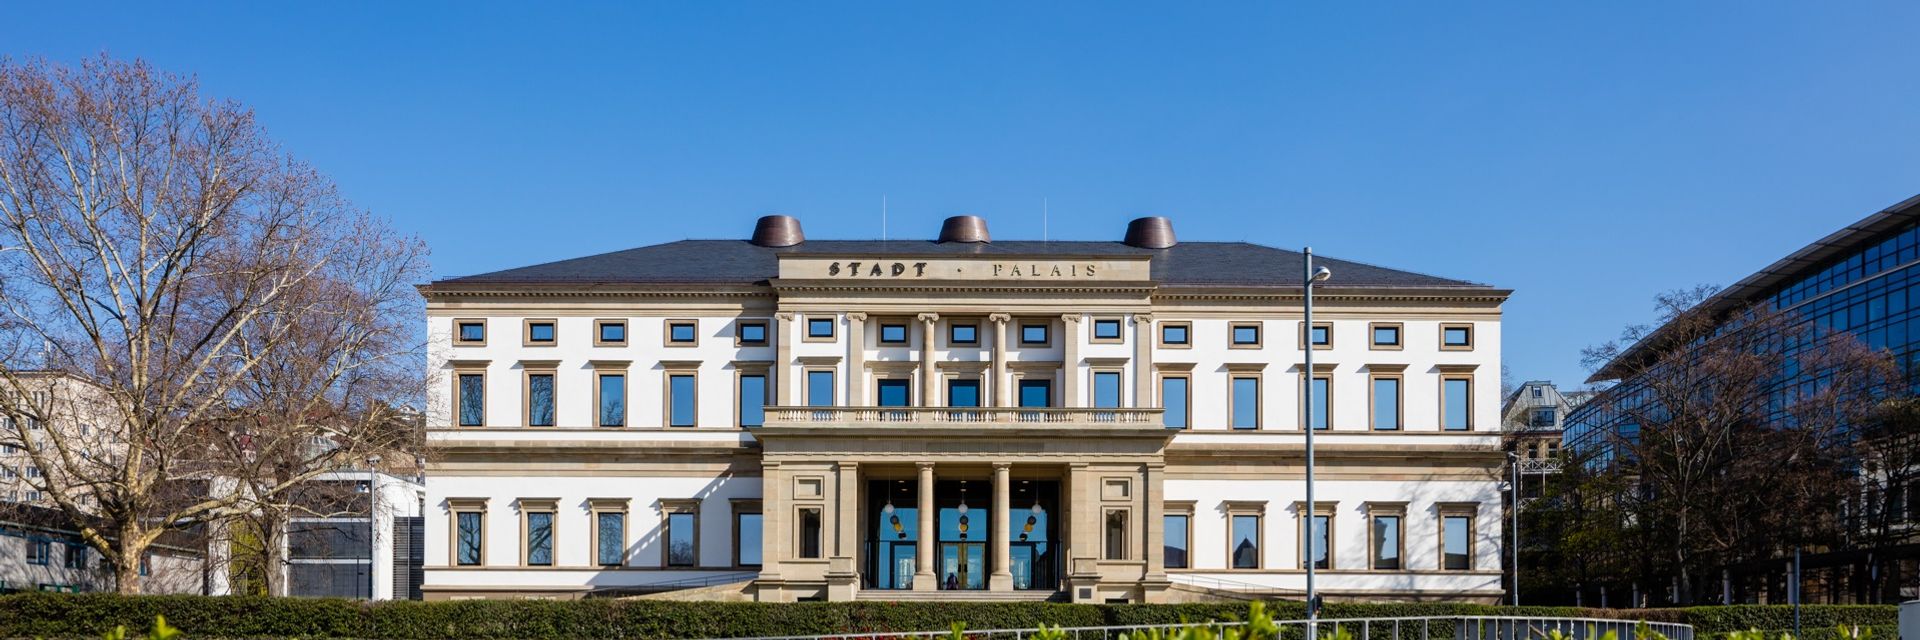 StadtPalais - Museo de Stuttgart